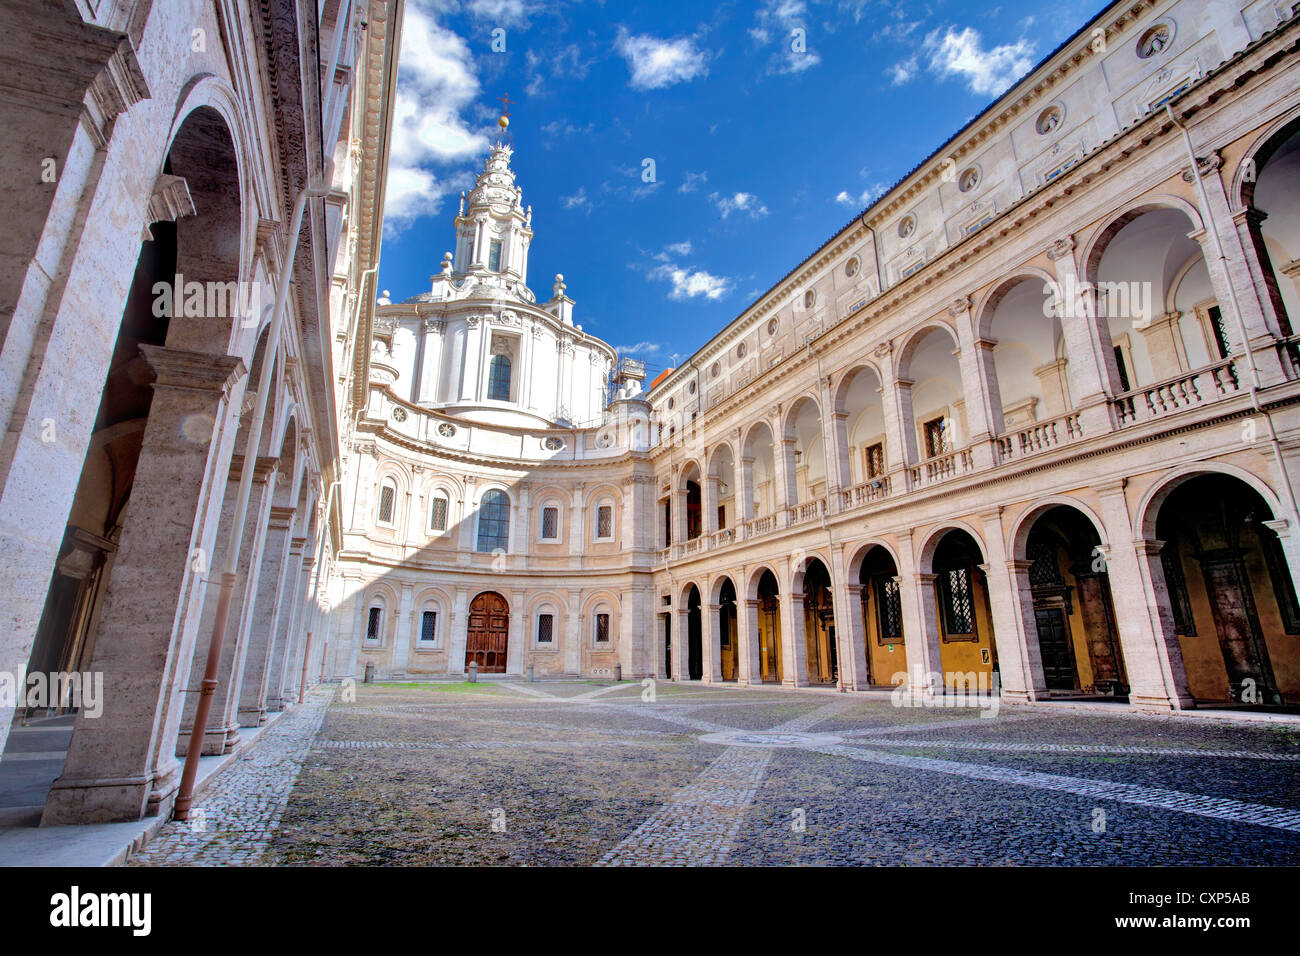 St. Ives in the Plaza of Wisdom, Rome, Itlay. Sant'Ivo in Palazzo della Sapienza, Roma, Italia Stock Photo